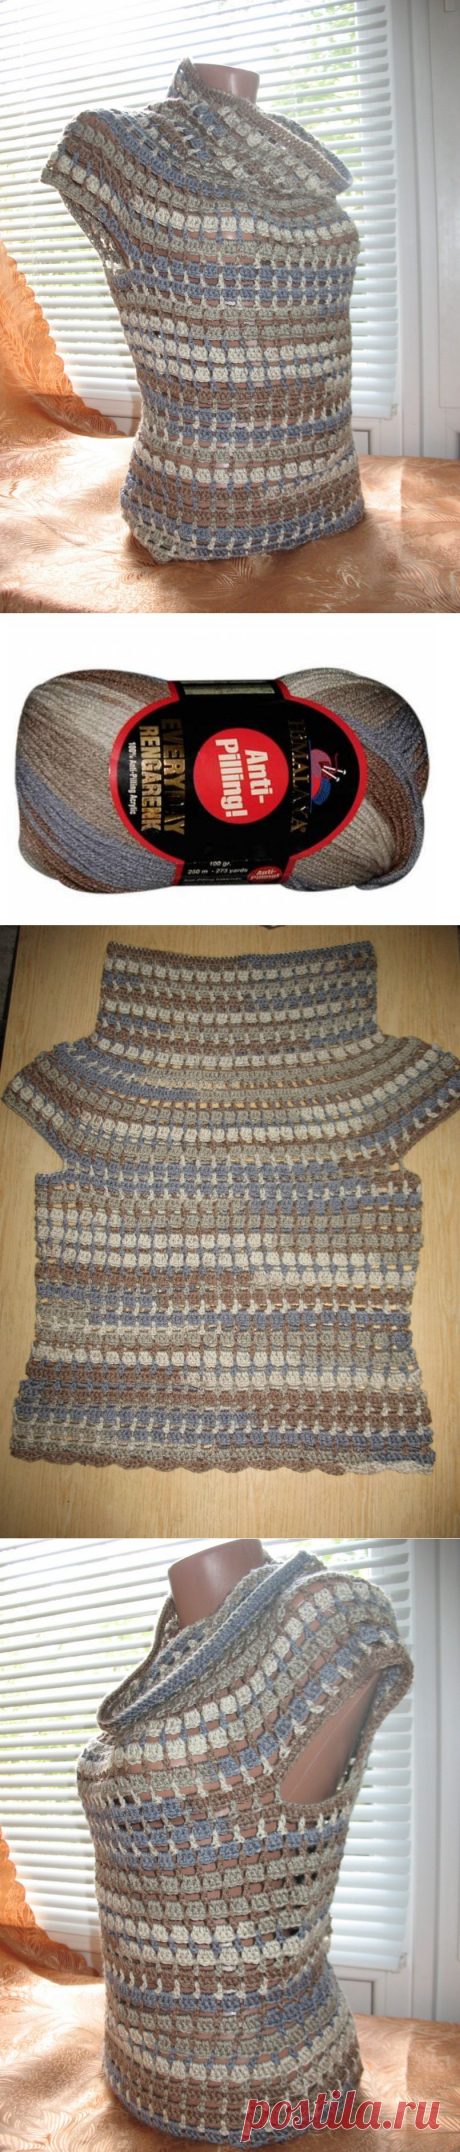 Пуловер с коротким рукавом для прохладных летних вечеров / KNITLY.com - блог о рукоделии